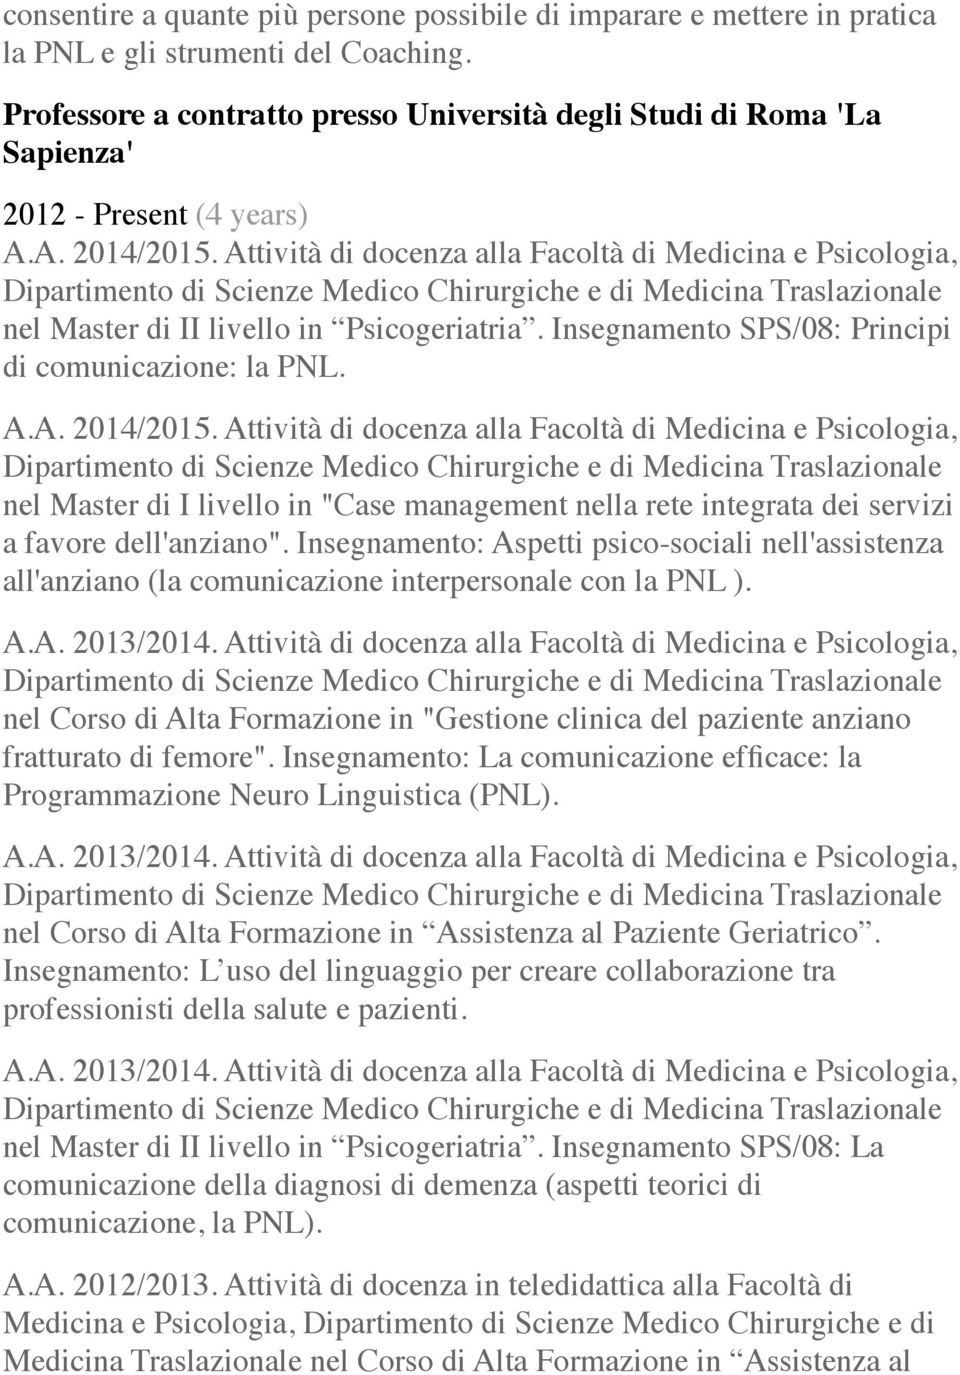 Attività di docenza alla Facoltà di Medicina e Psicologia, nel Master di II livello in Psicogeriatria. Insegnamento SPS/08: Principi di comunicazione: la PNL. A.A. 2014/2015.